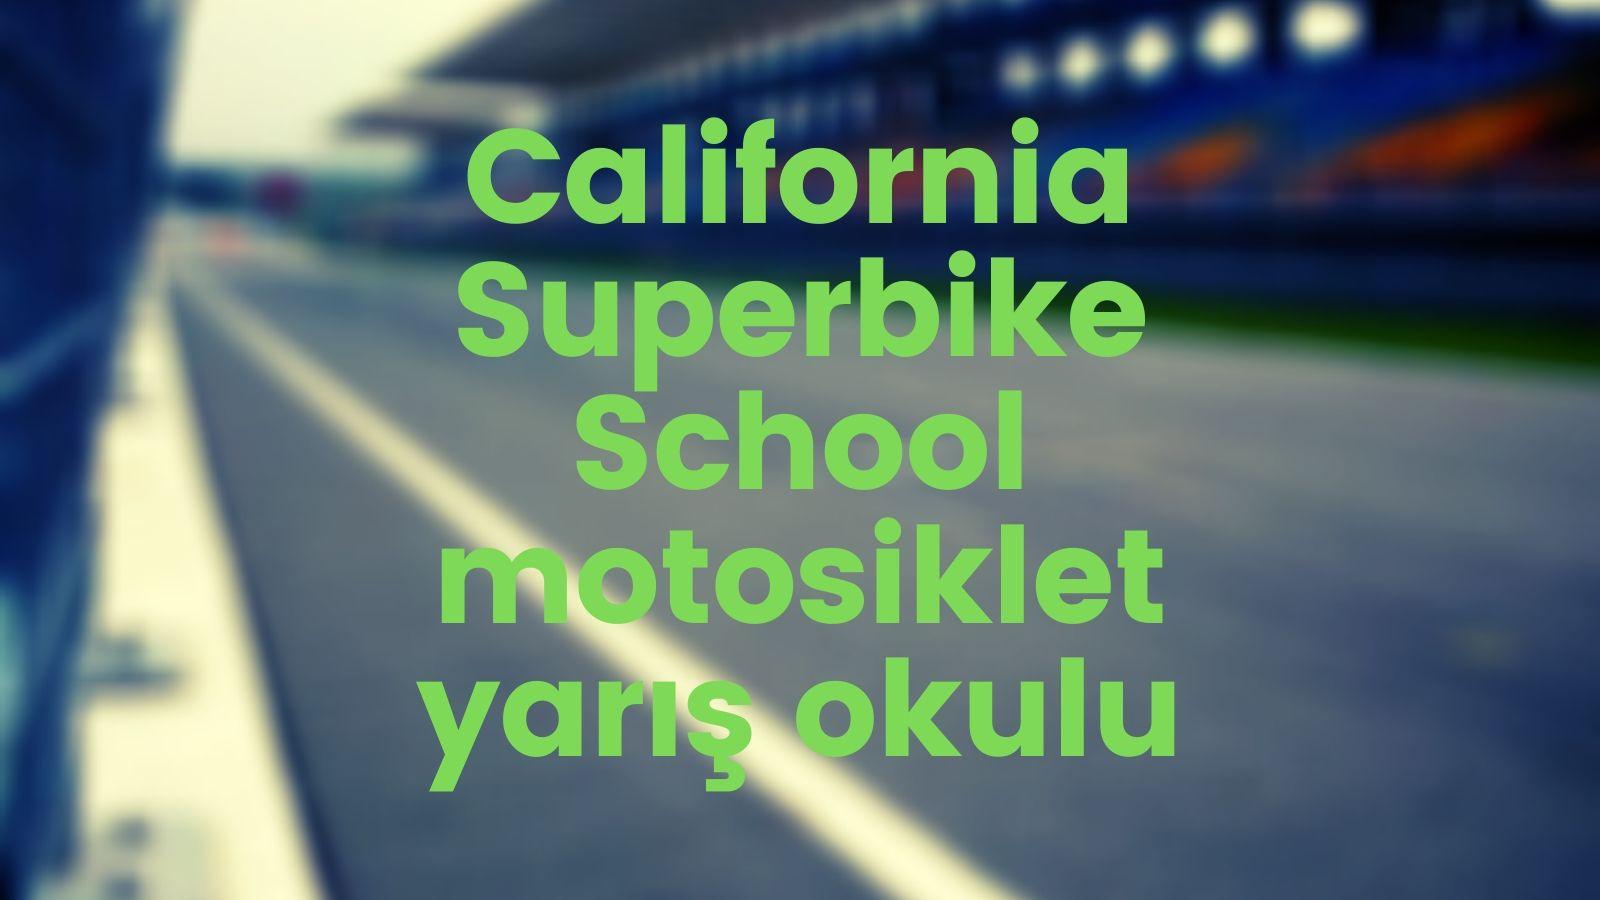 California Superbike School motosiklet yarış okulu kapak görseli